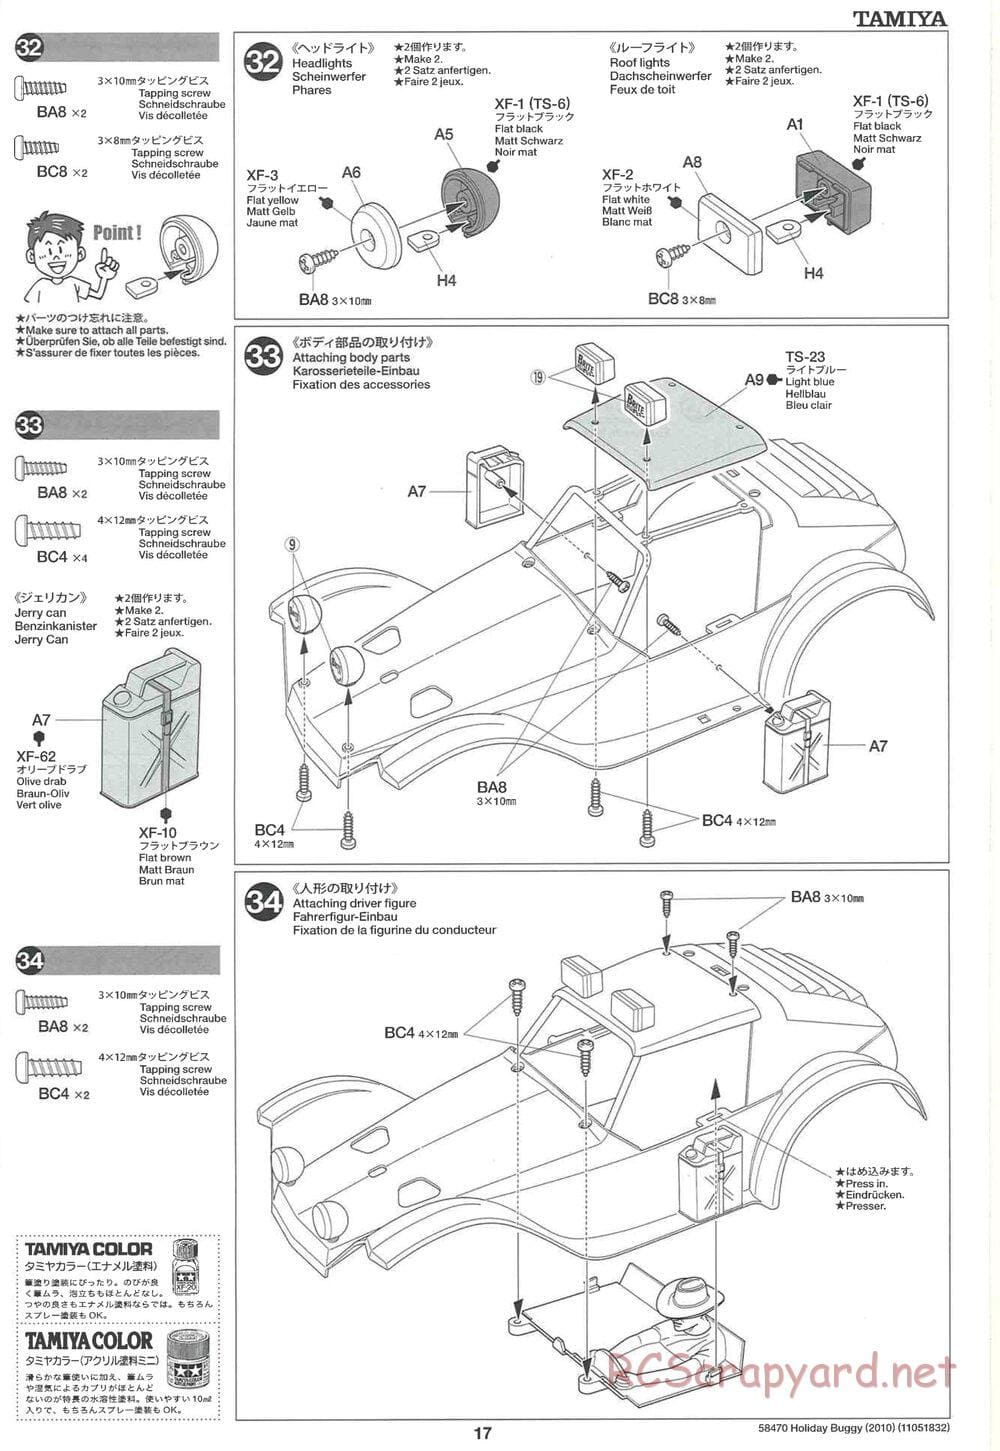 Tamiya - Holiday Buggy 2010 Chassis - Manual - Page 17